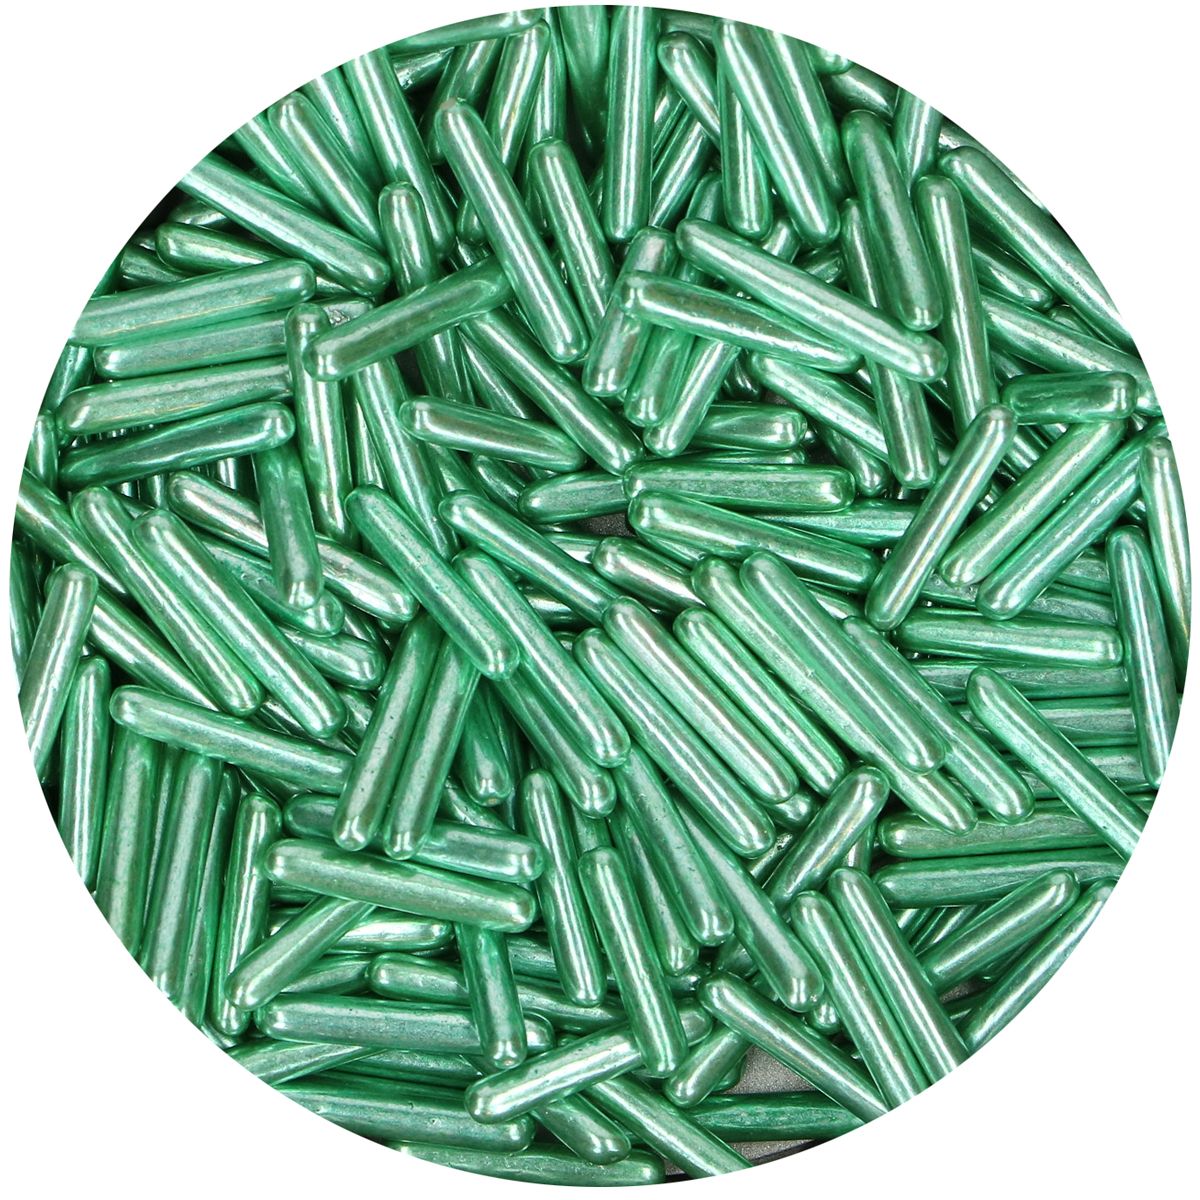 Imagen del producto: Fideos metalizados verdes, 70 g - Funcakes